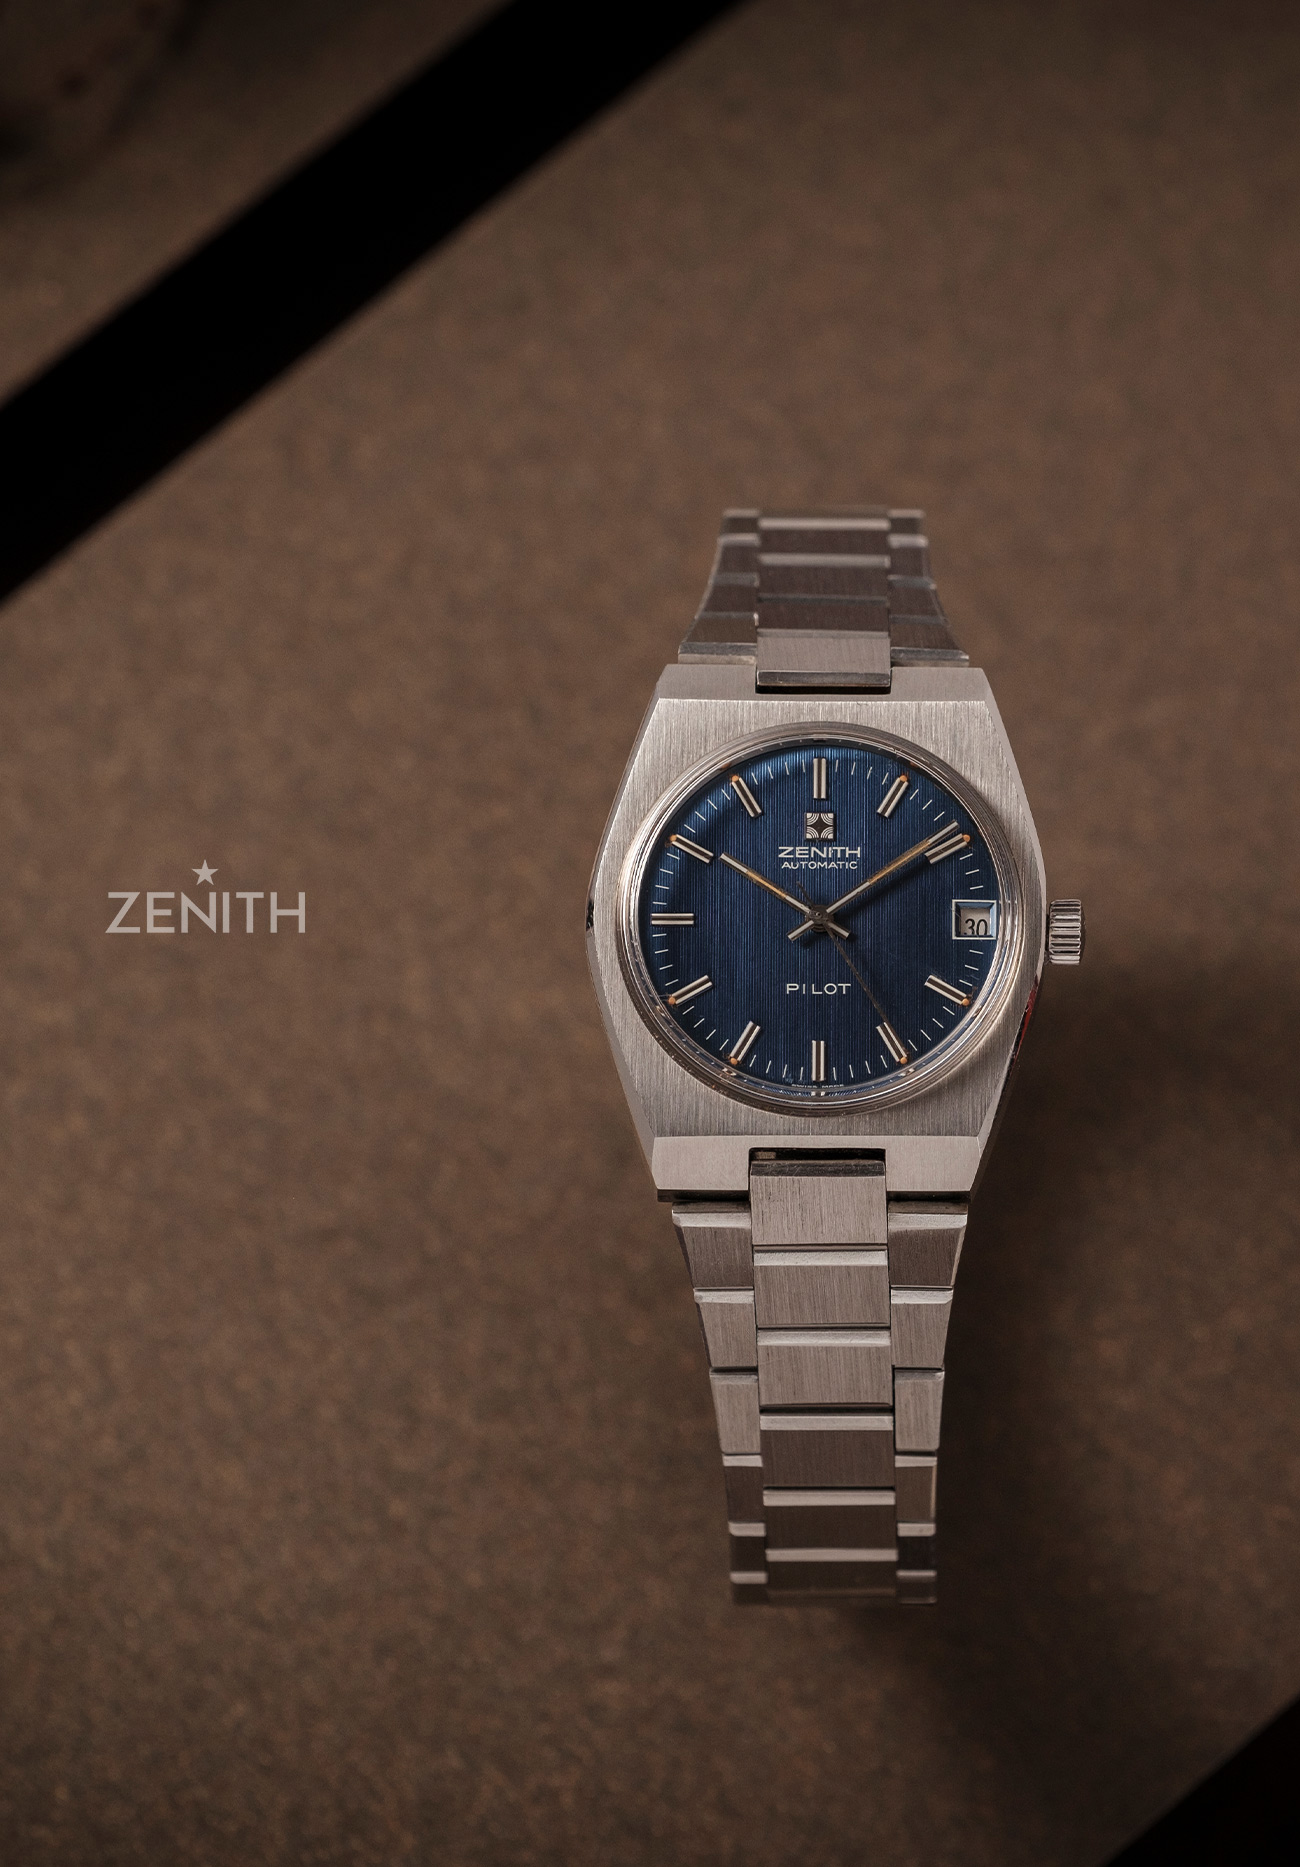 Zenith luxury watches